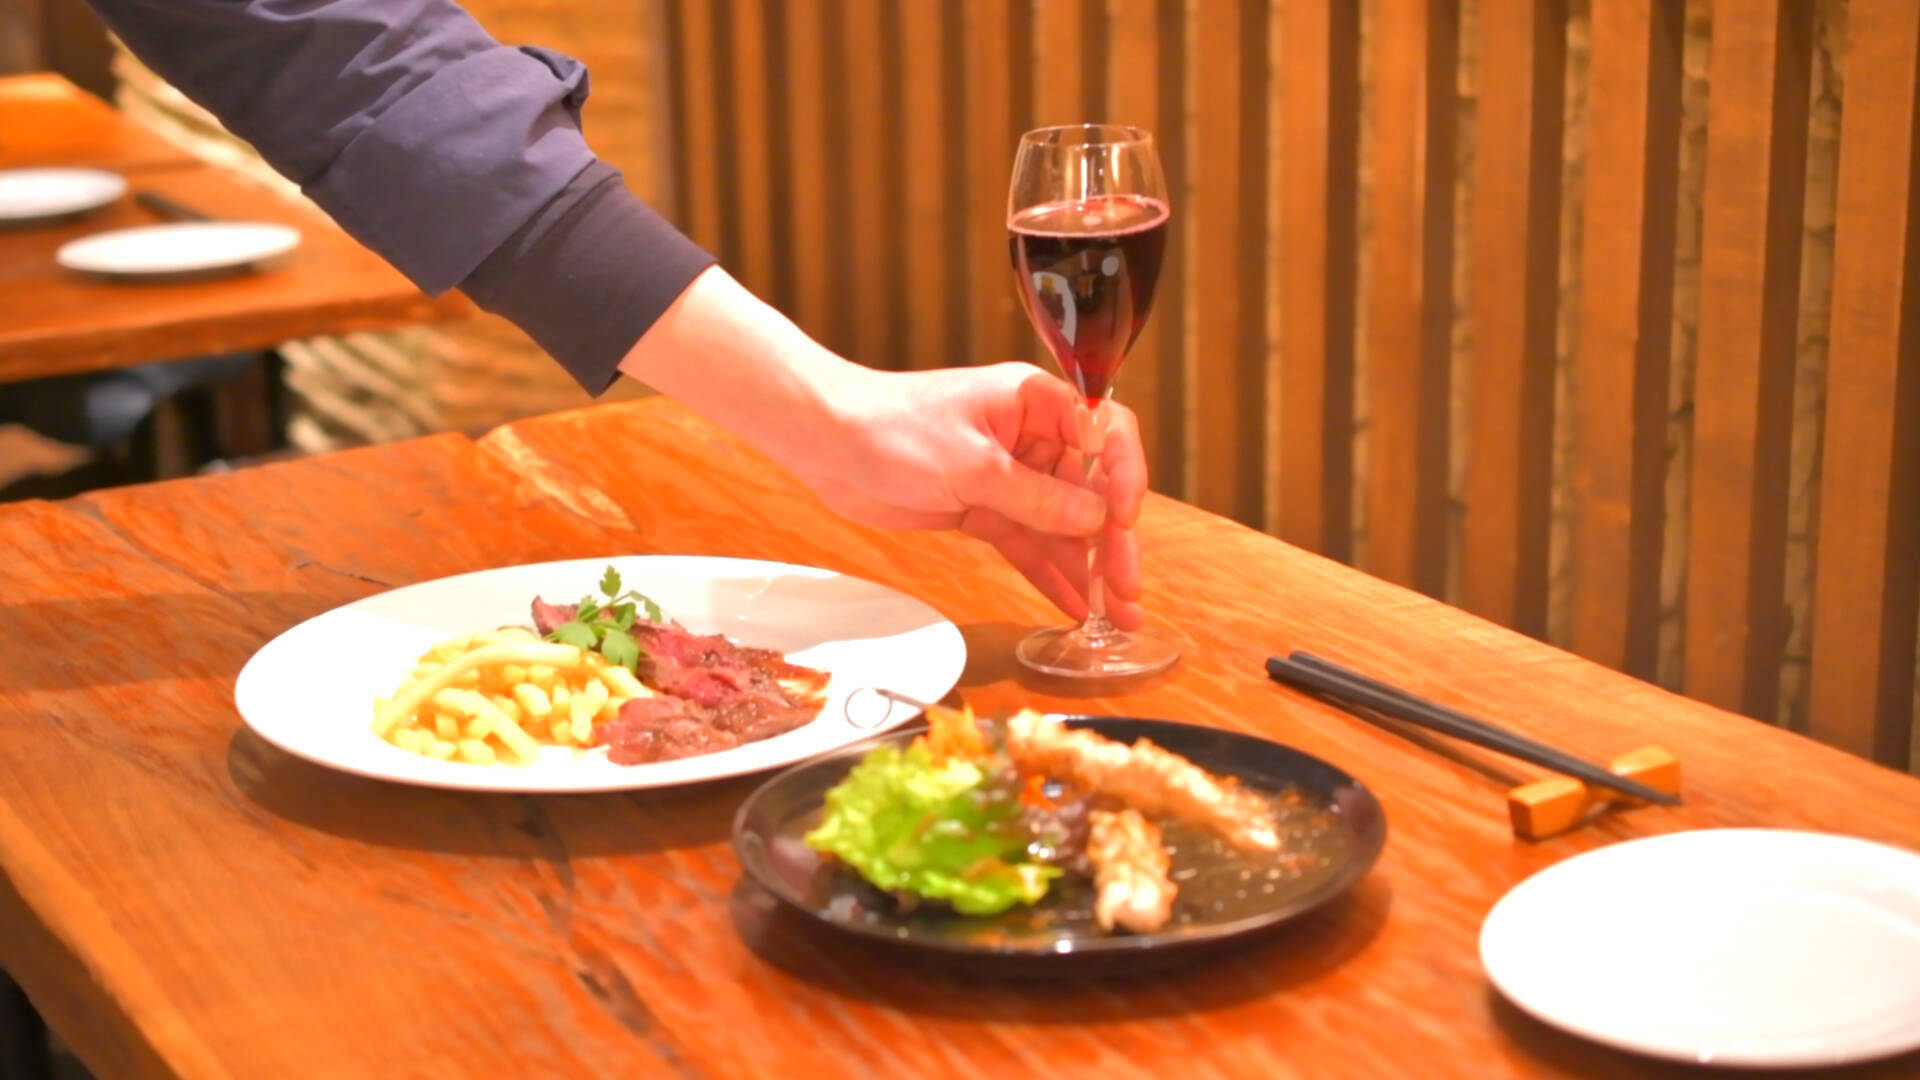 赤ワインとジビエ肉で美味しく美活「ズーガンズー 渋谷店」へのアクセス、メニューまとめ